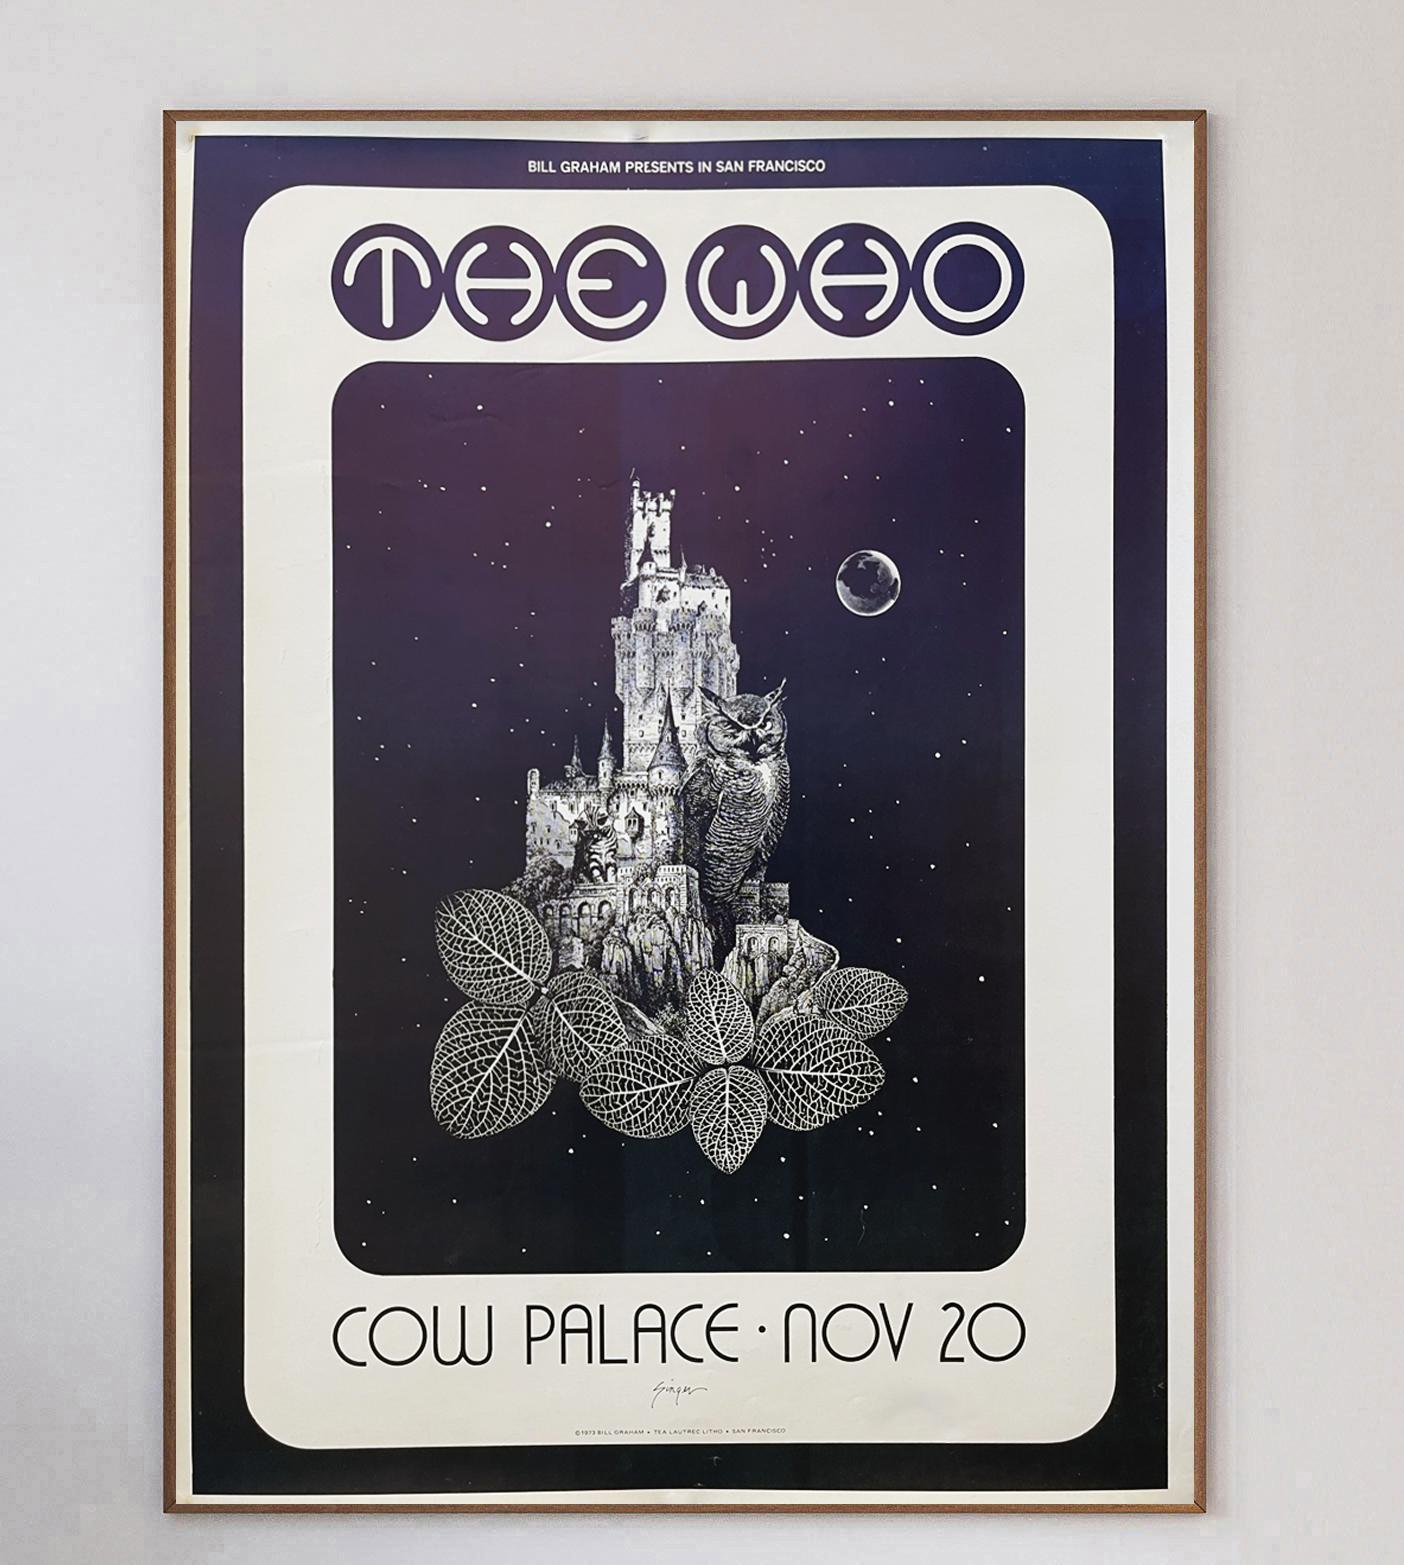 Fantastisches Plakat für ein Live-Konzert von The Who im kultigen Cow Palace in Kalifornien, USA. Das von Bill Graham moderierte Konzert fand am 20. November statt und war die erste Station ihrer 